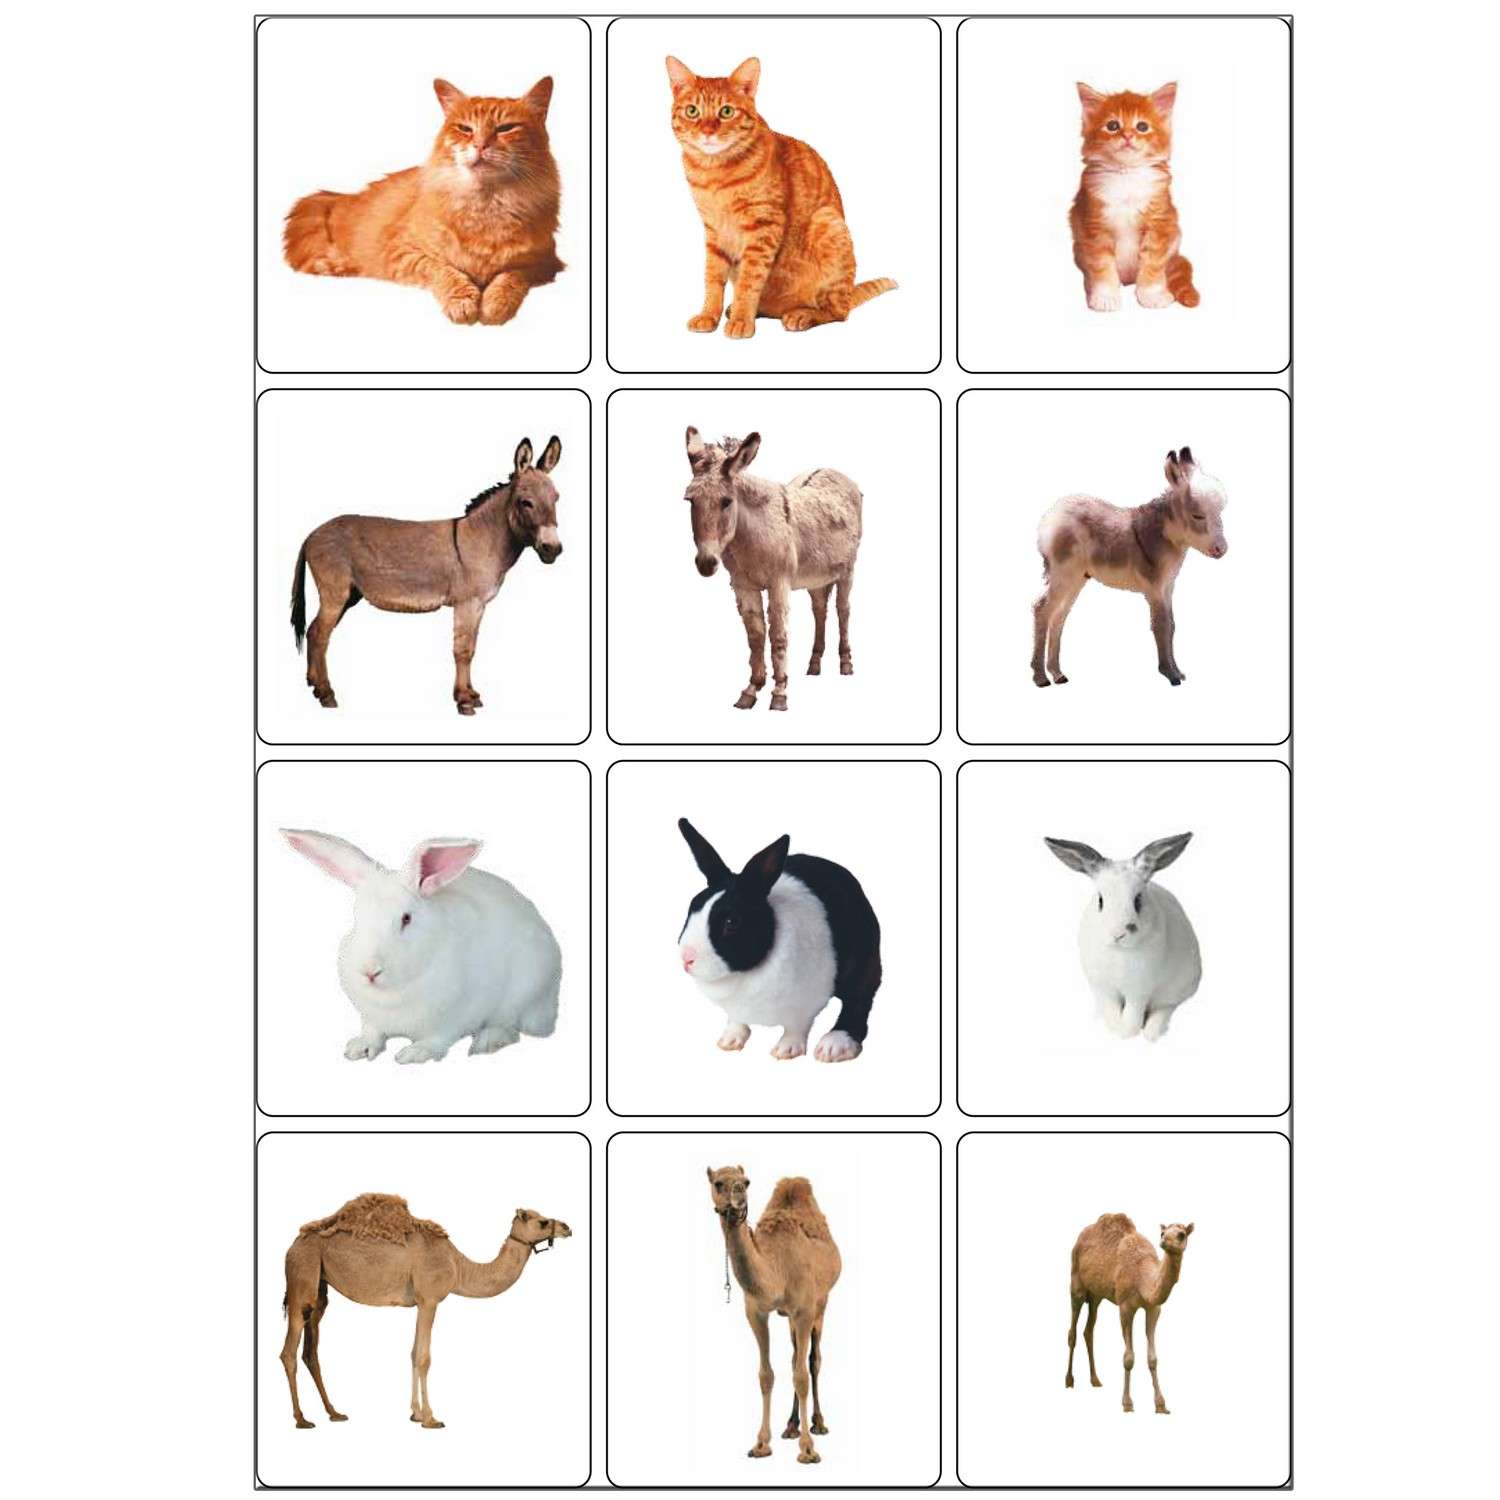 картинки для изучения животных для детей